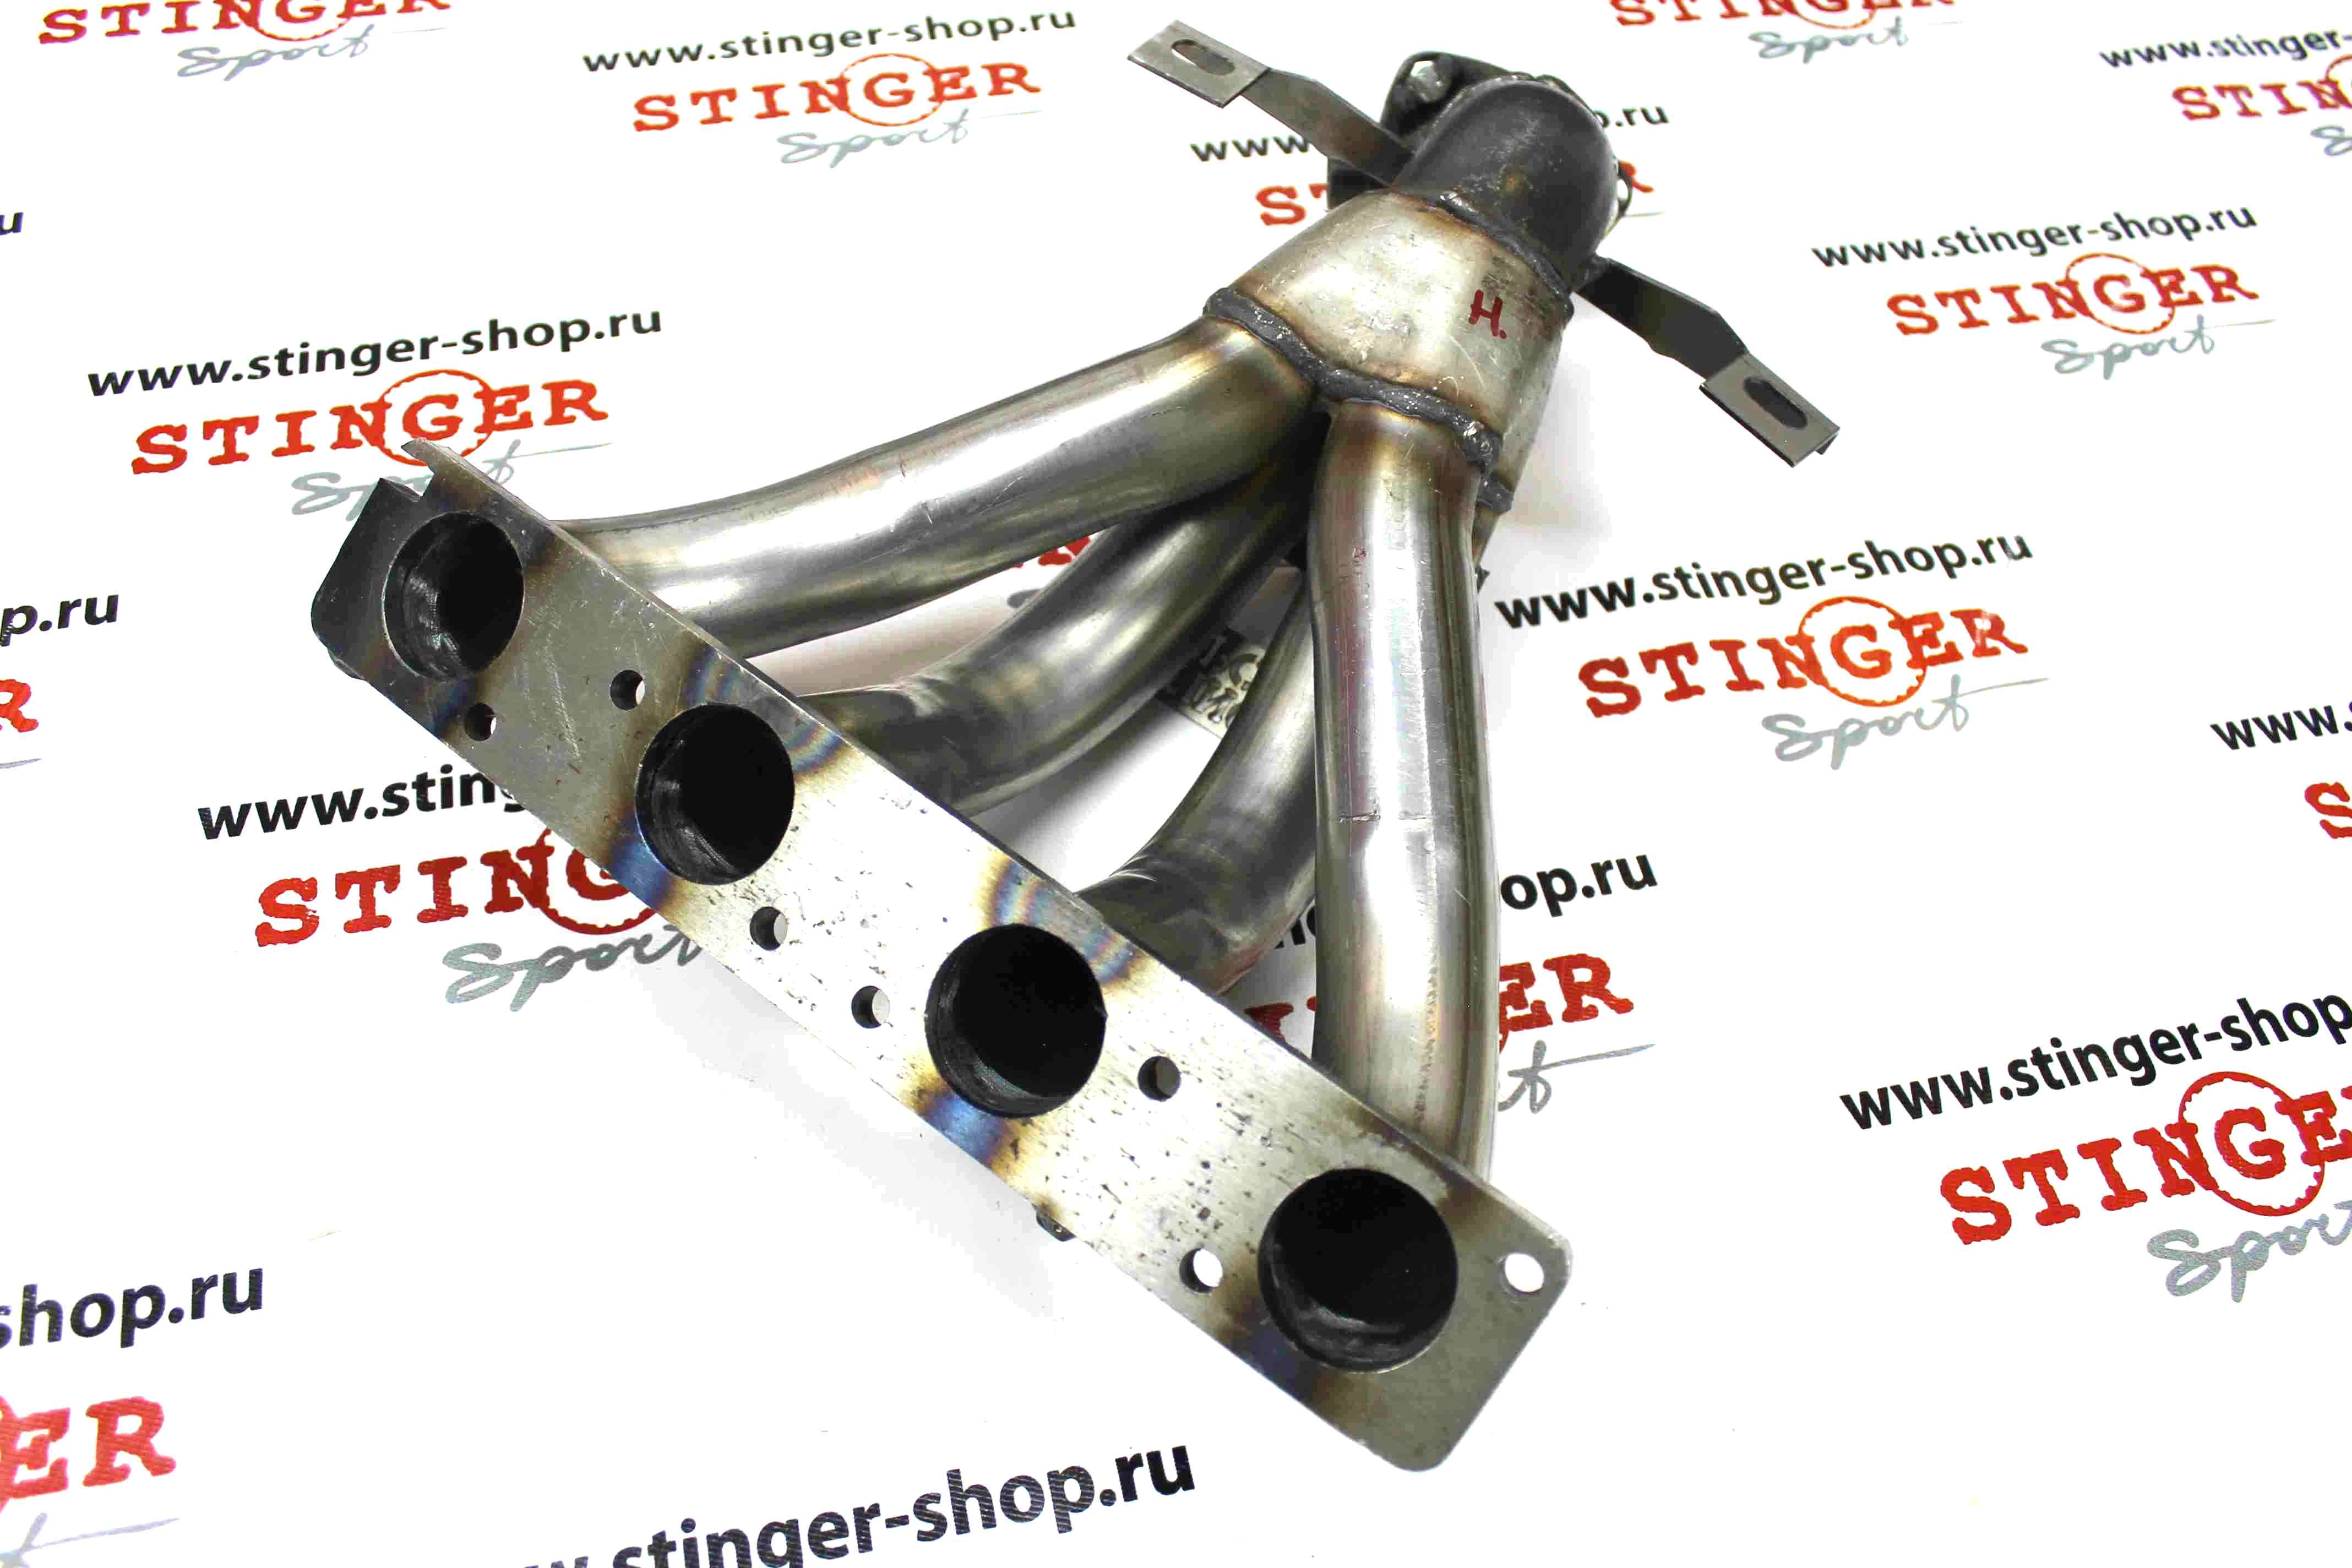 Вставка для замены катализатора "Stinger Sport" 4-1 16V 1.8L ВАЗ X-RAY (один датчик кислорода) (нержавеющая сталь)